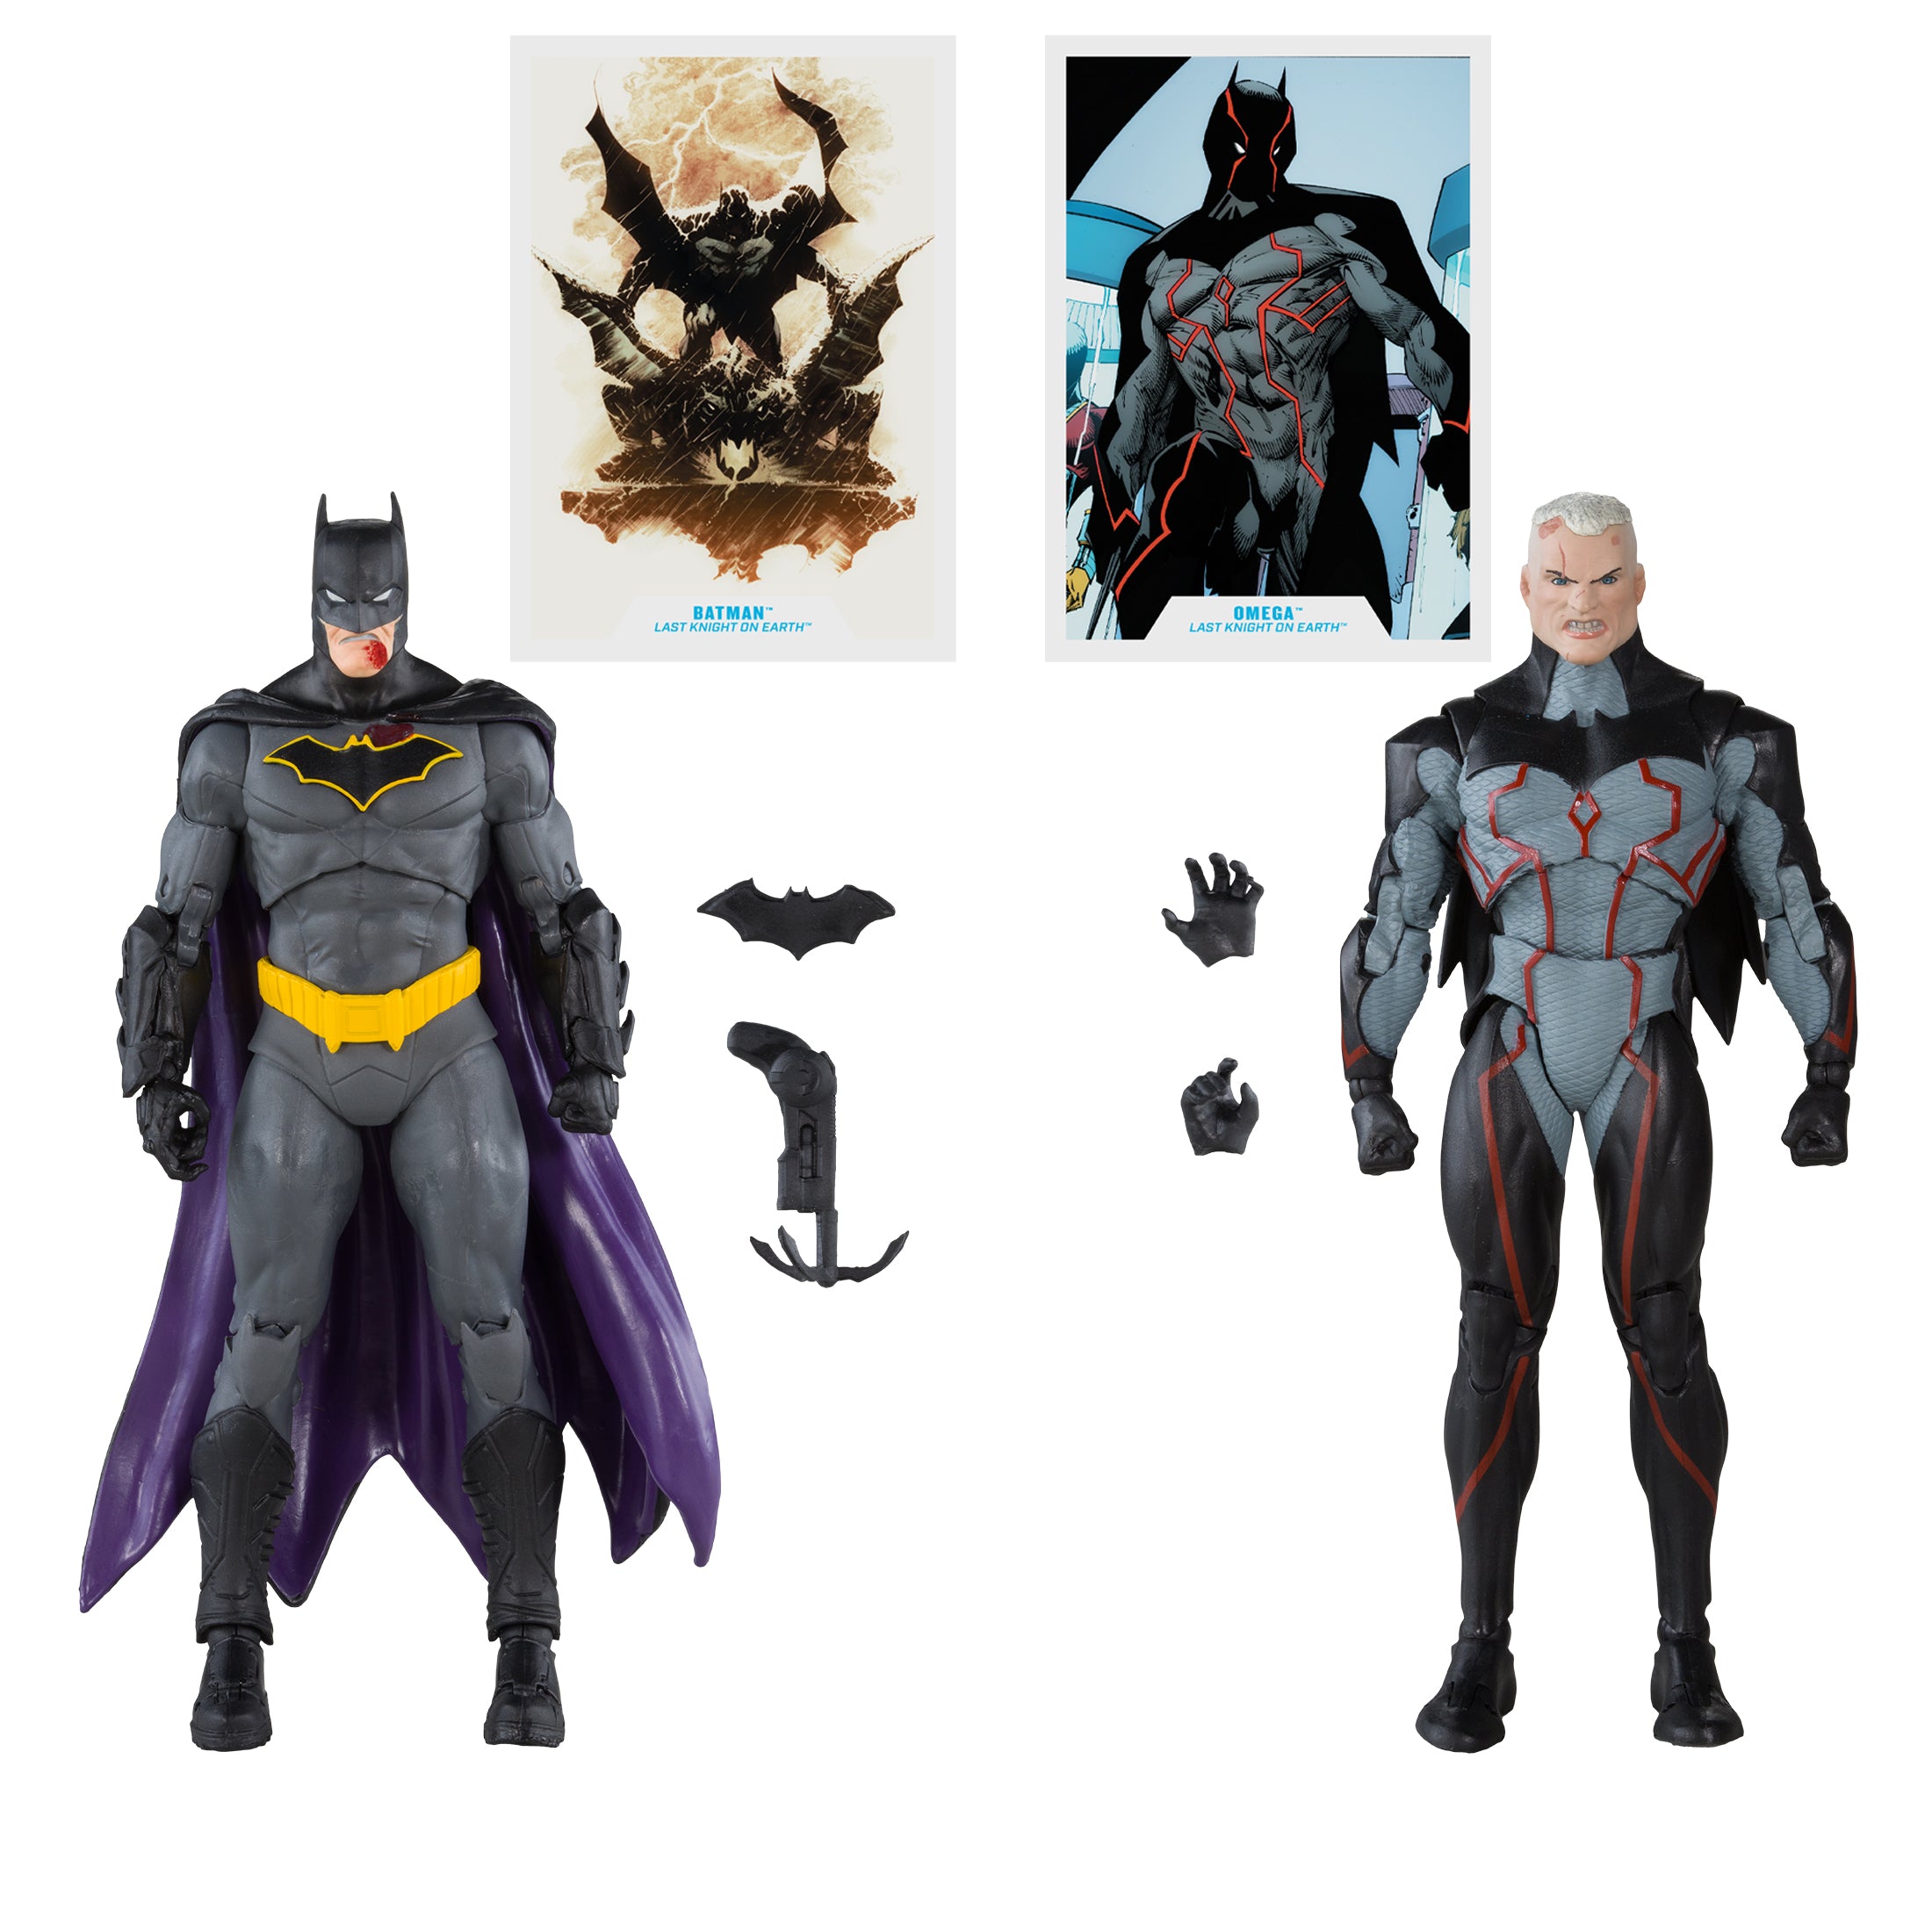 McFarlane DC Collector: Batman Last Knight On Earth - Omega sin Mascara y Batman Sangrado Gold Label 2 Pack 7 Pulgadas